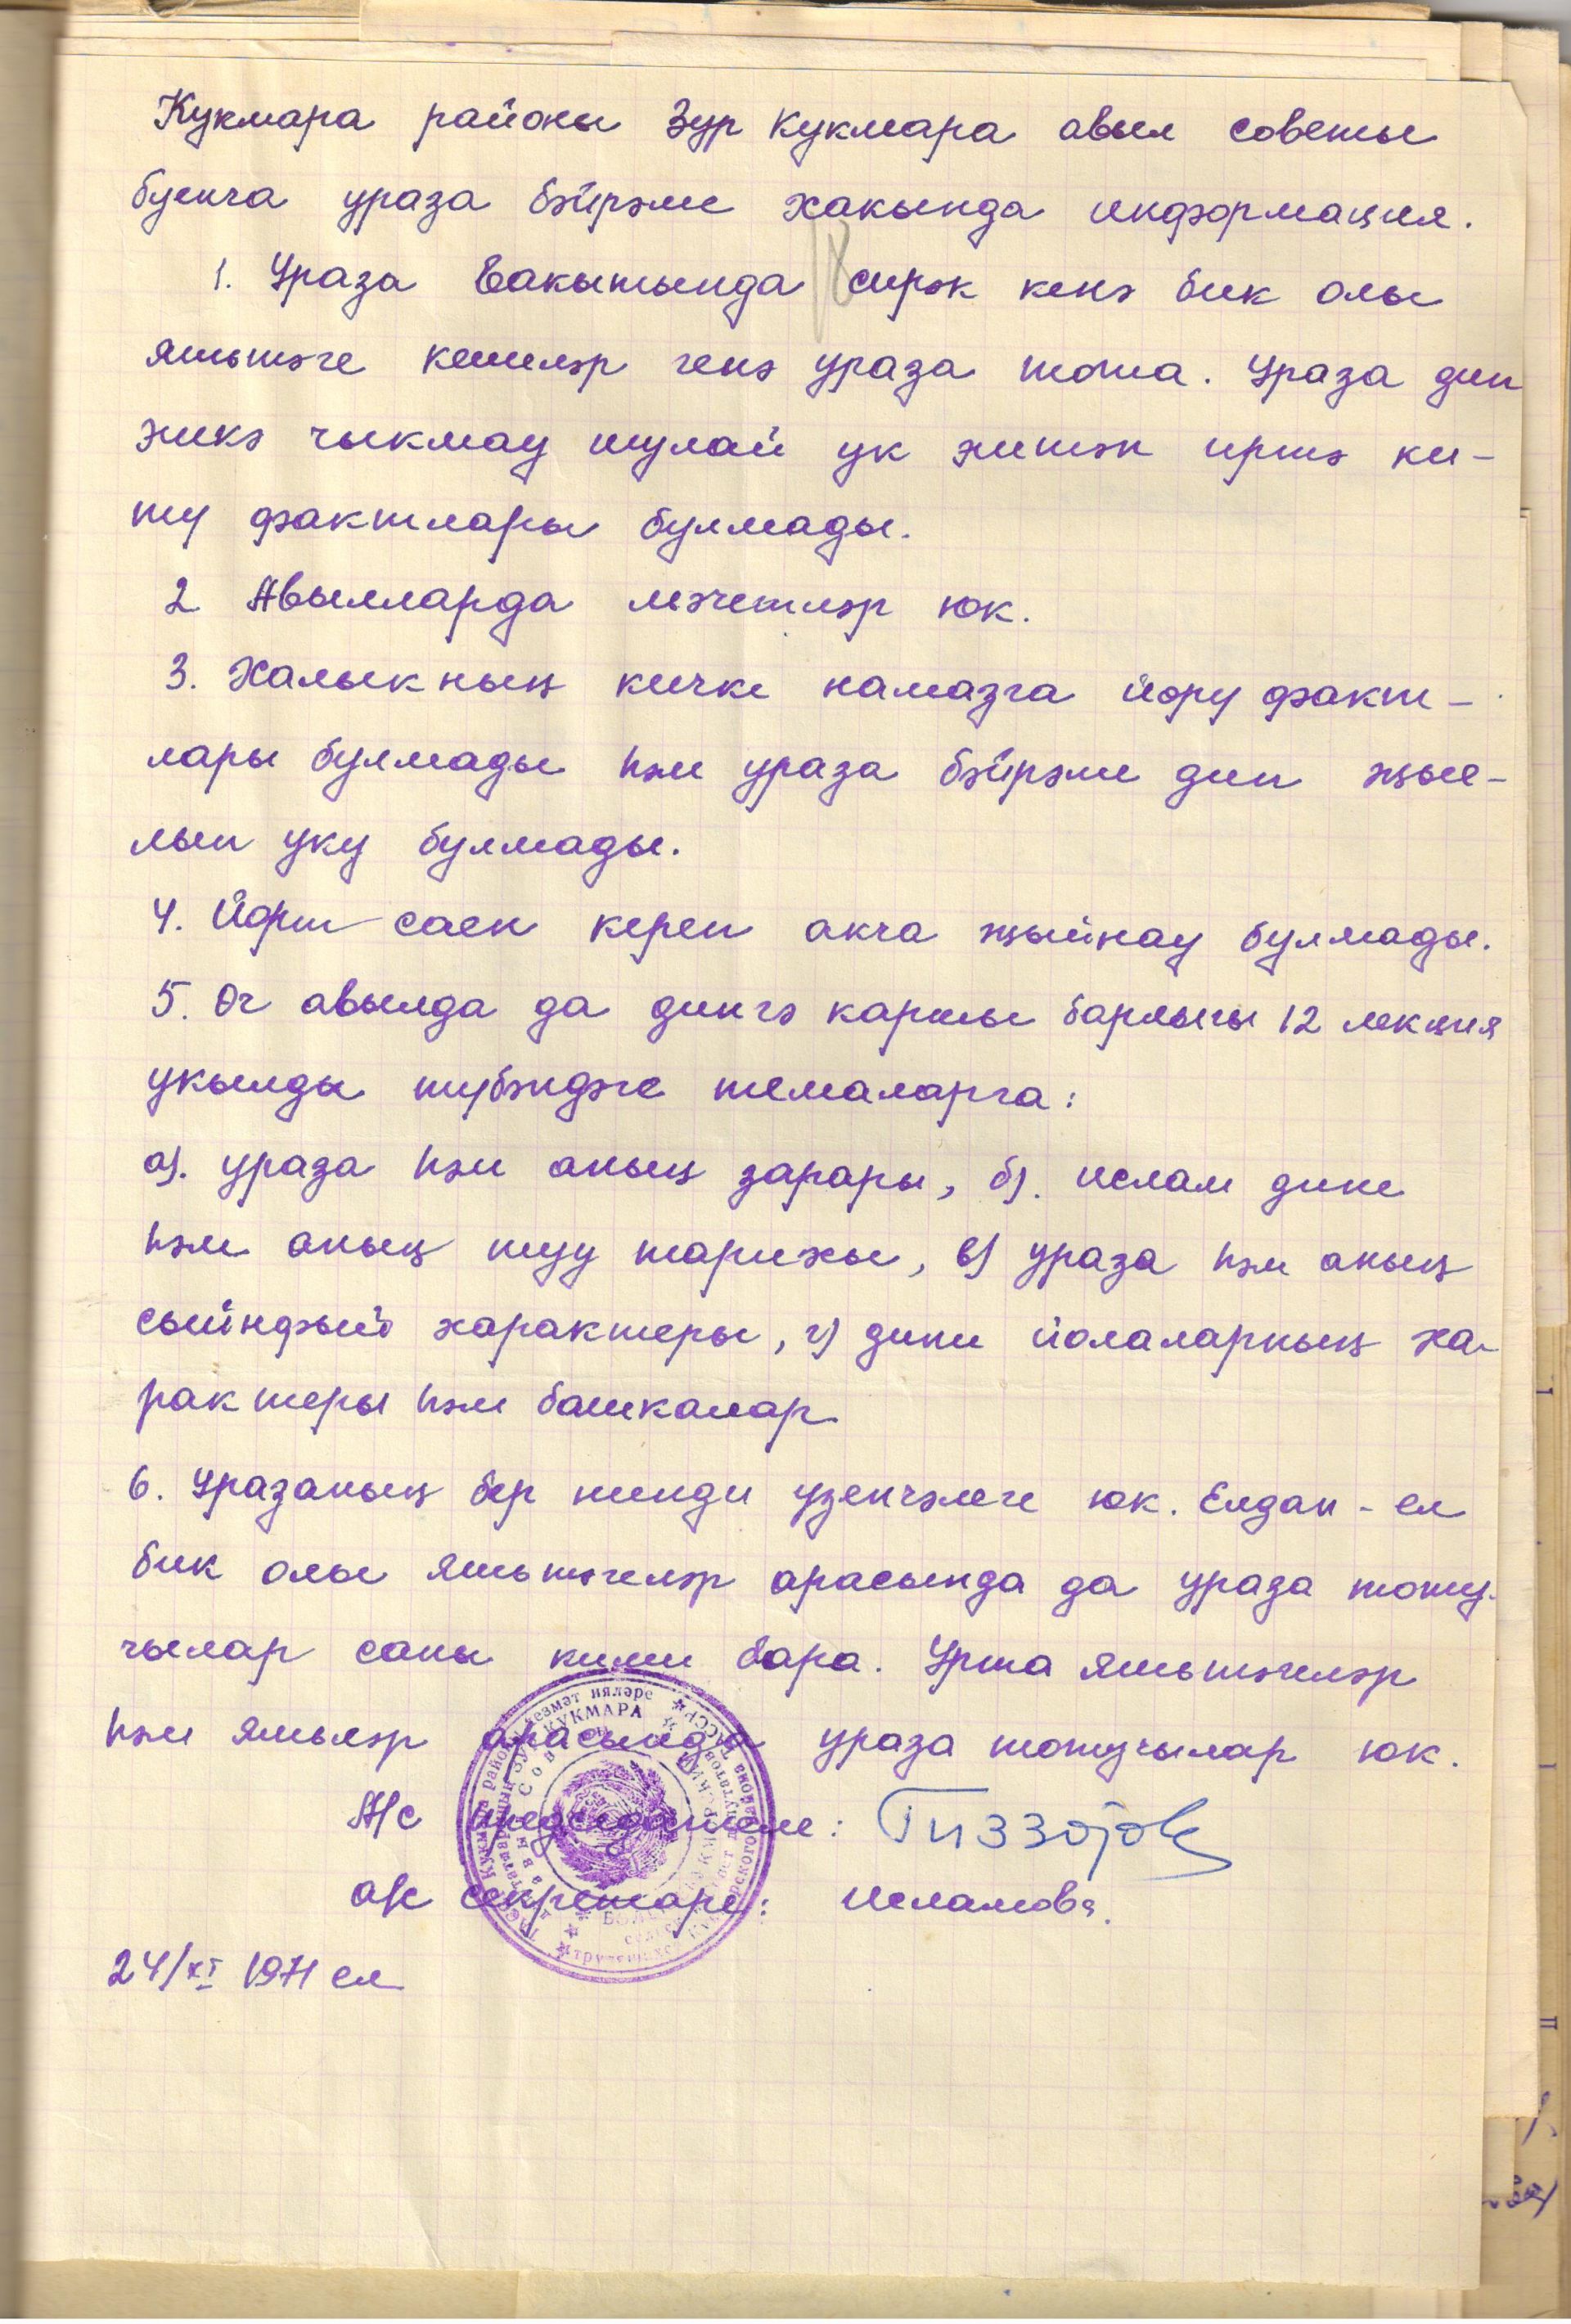 Виртуальная выставка архивных документов, хранящихся в Кукморском архиве